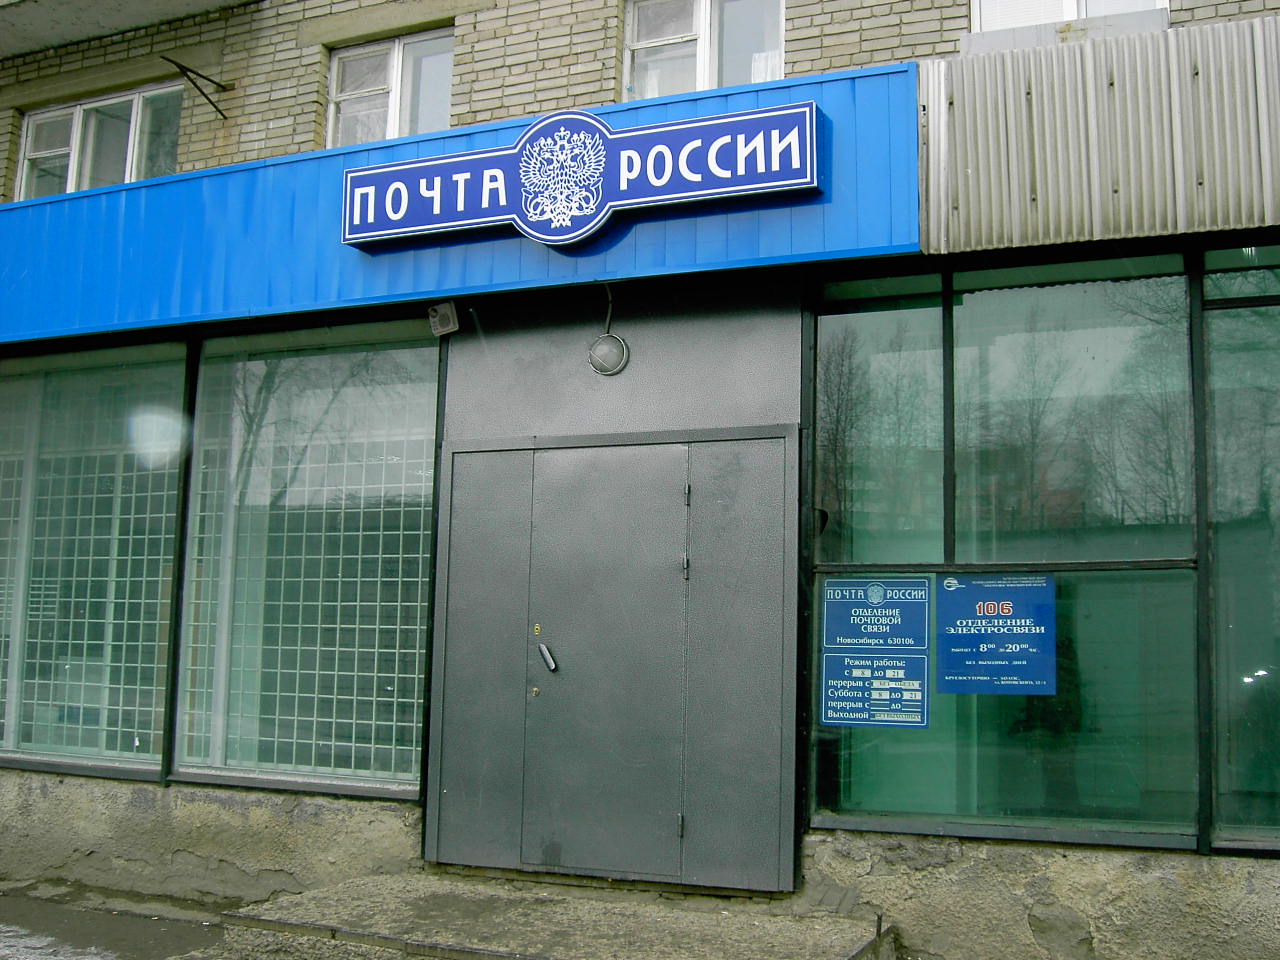 ВХОД, отделение почтовой связи 630106, Новосибирская обл., Новосибирск